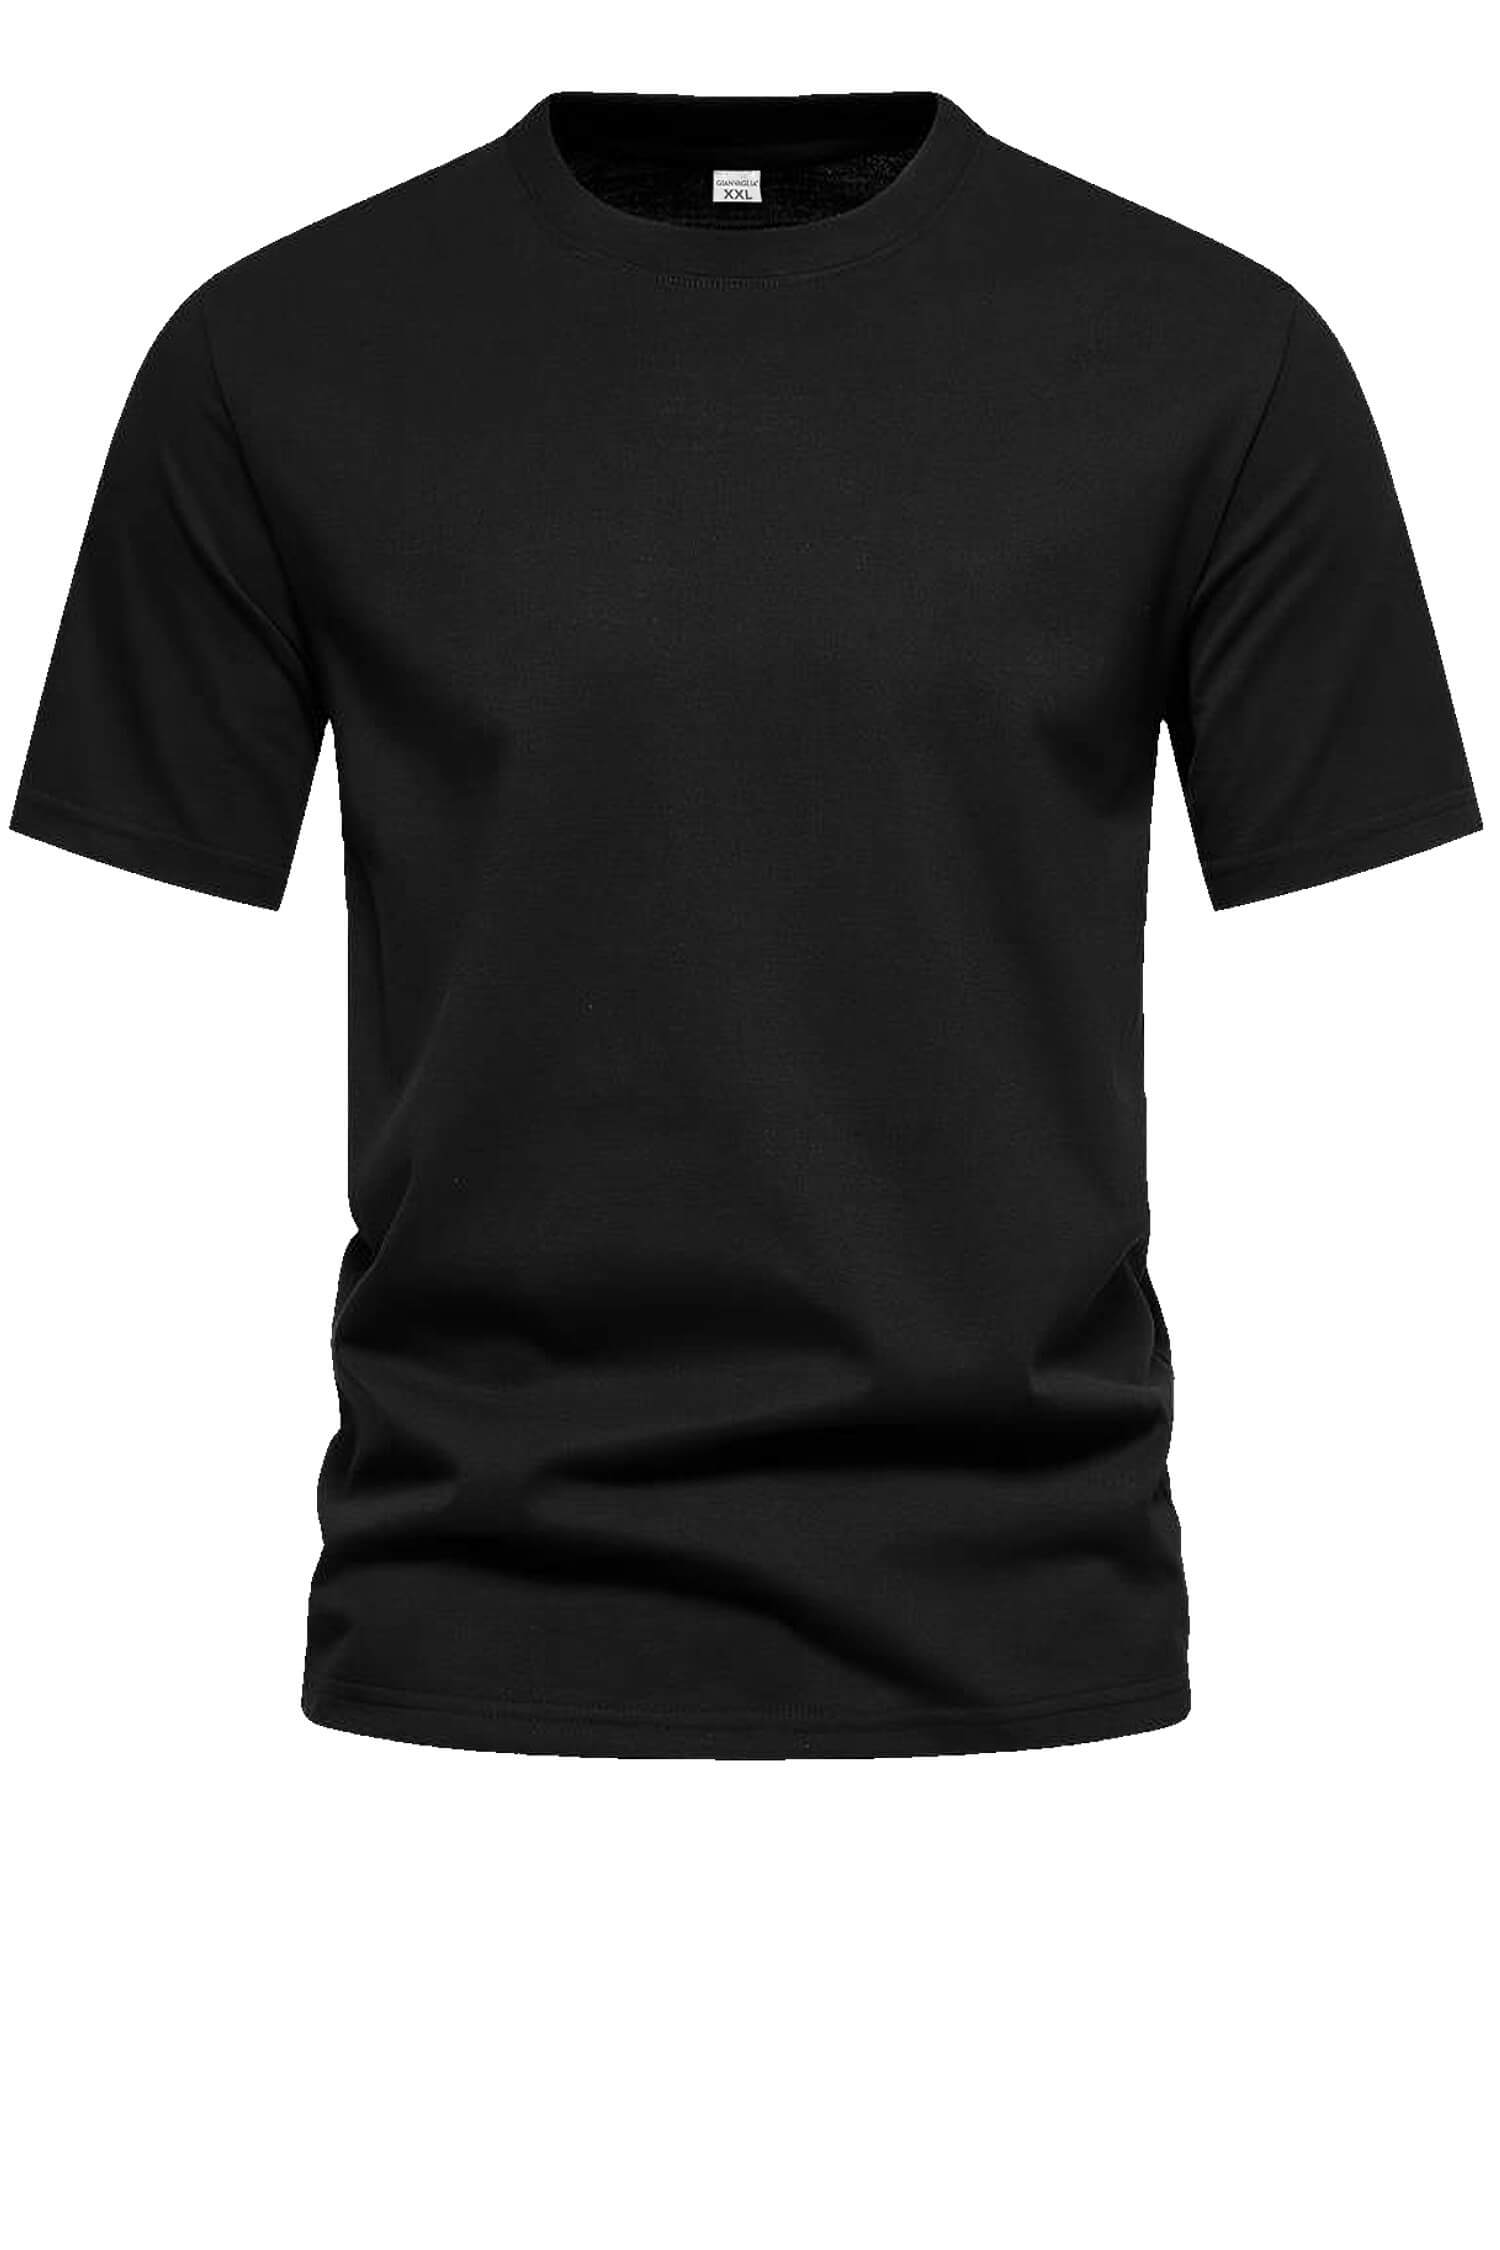 Bořek pánské klasické tričko TS-1006 černá L